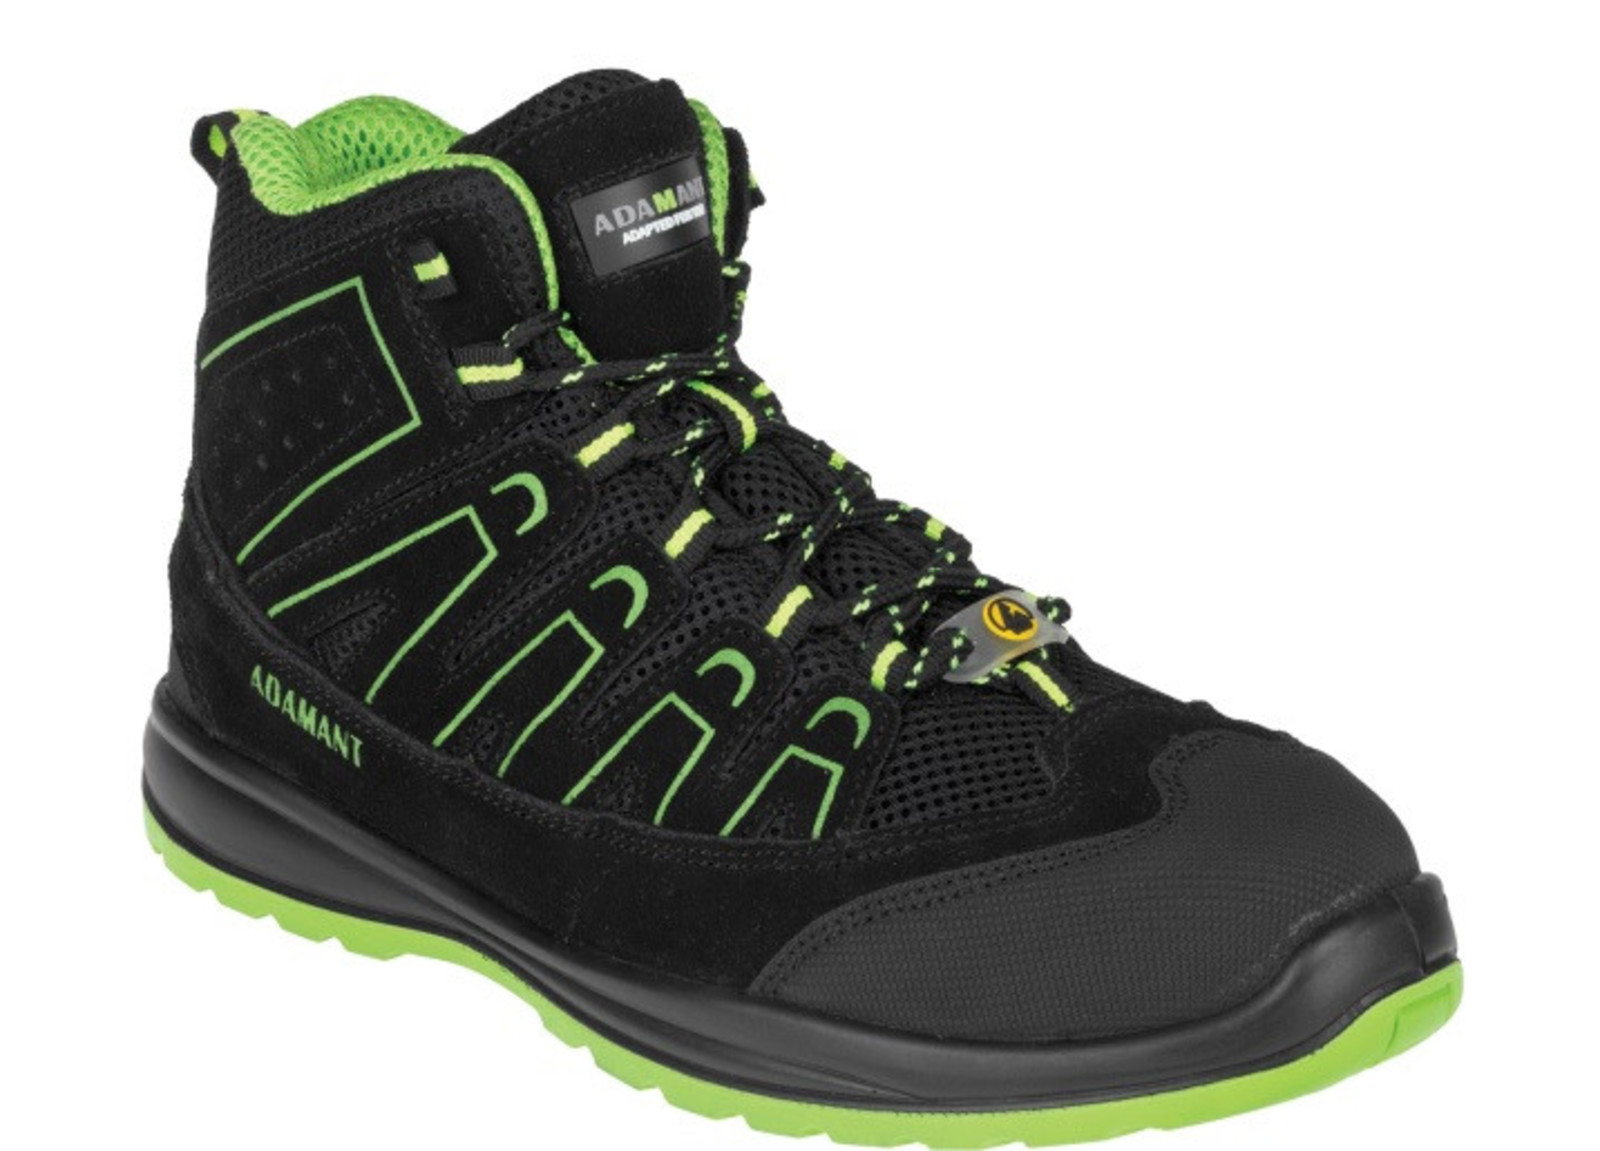 Bezpečnostná obuv Adamant Alegro S1P ESD - veľkosť: 43, farba: čierna/zelená